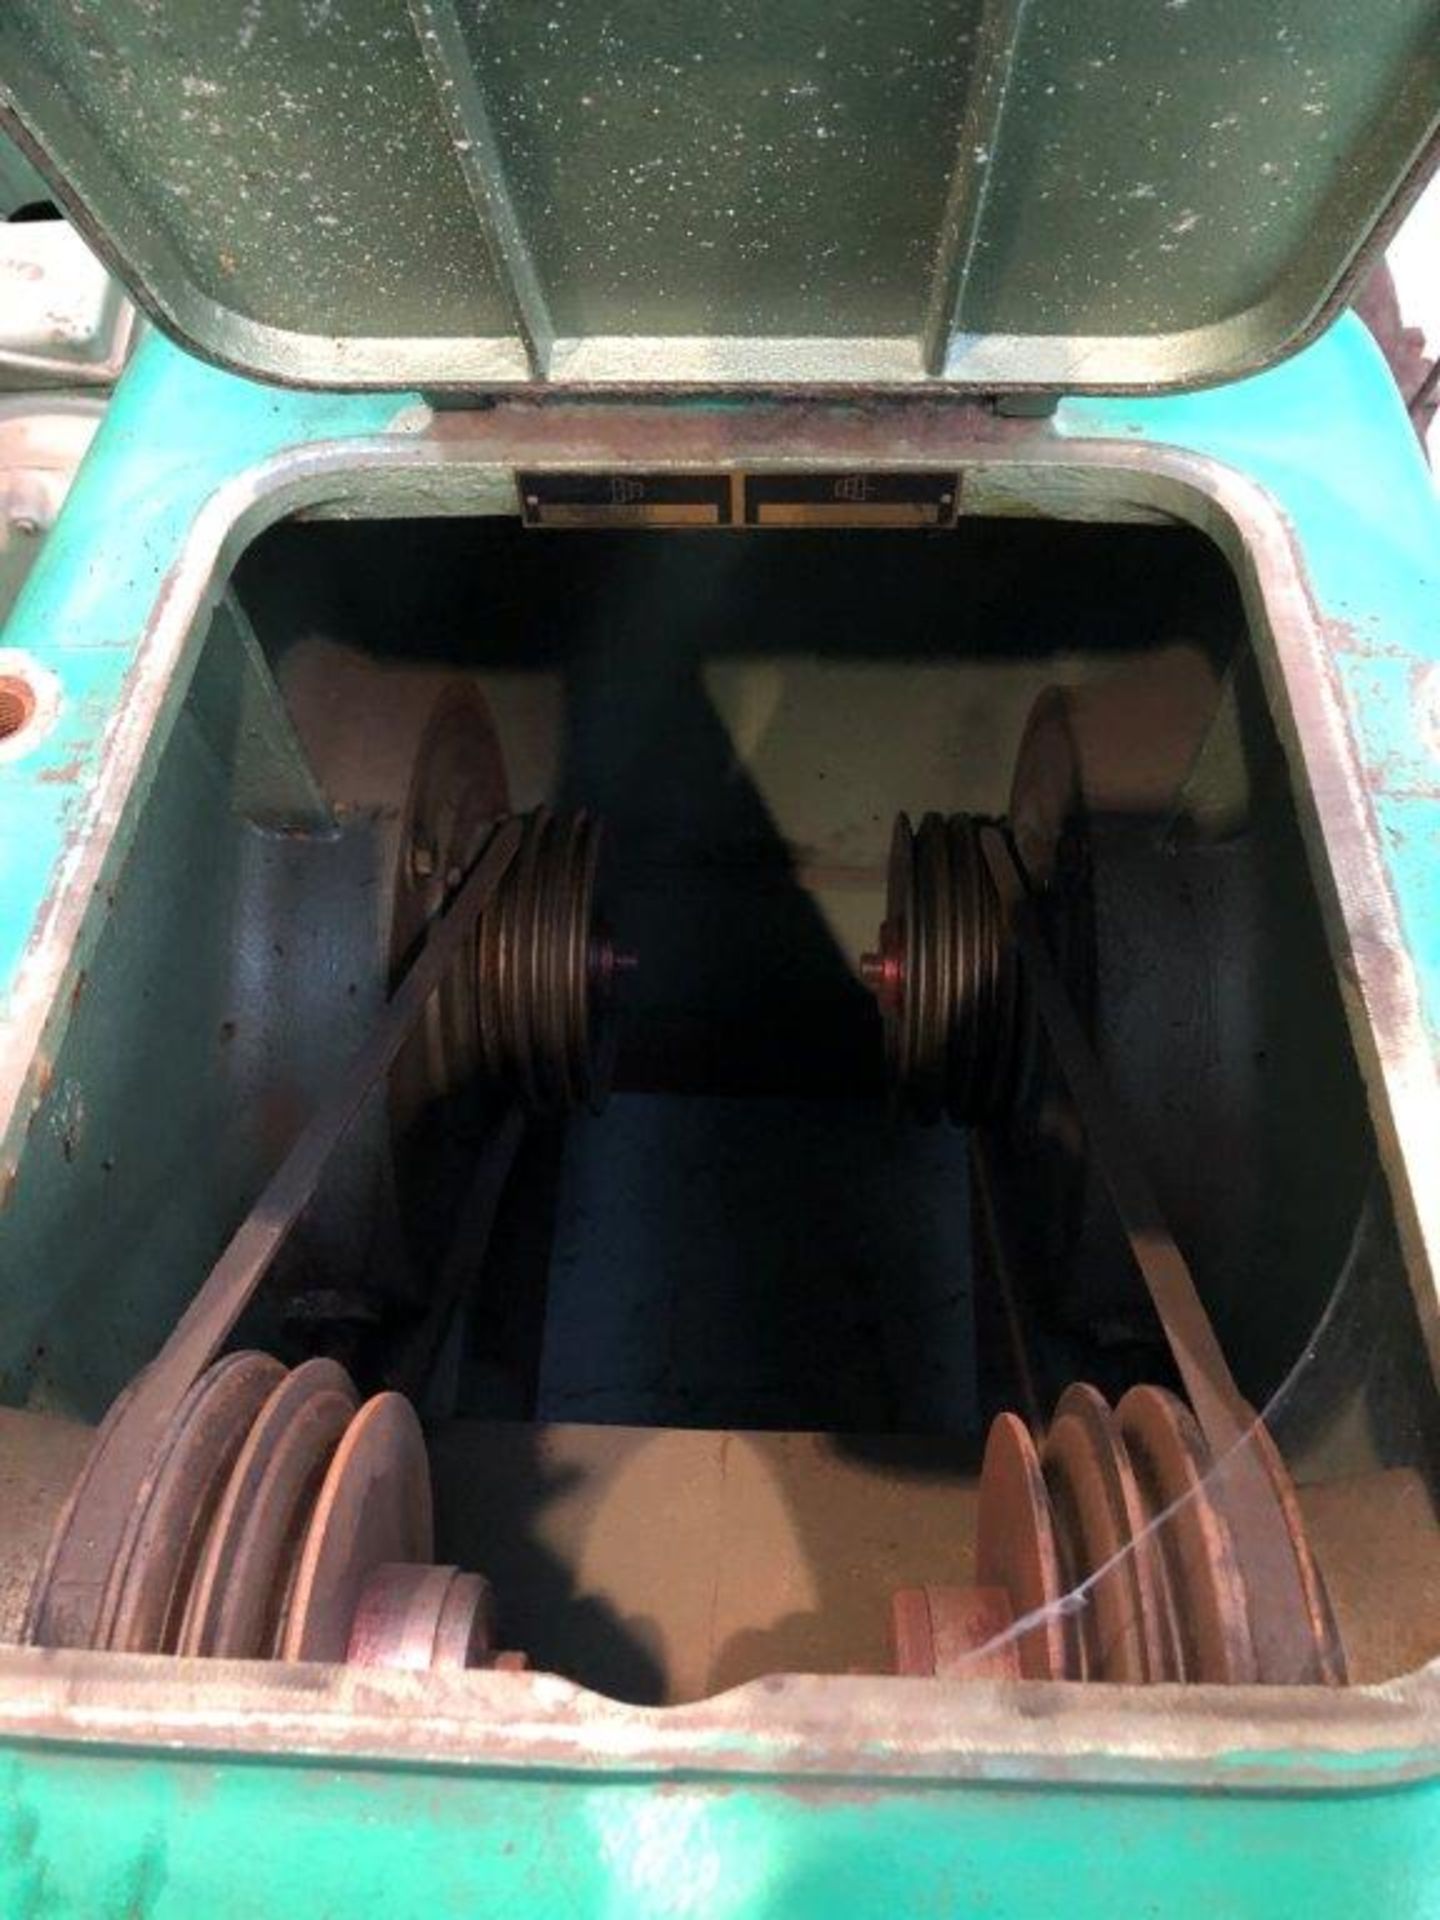 Greif Twin Spindle Wheel Polishing Machine - Image 7 of 9